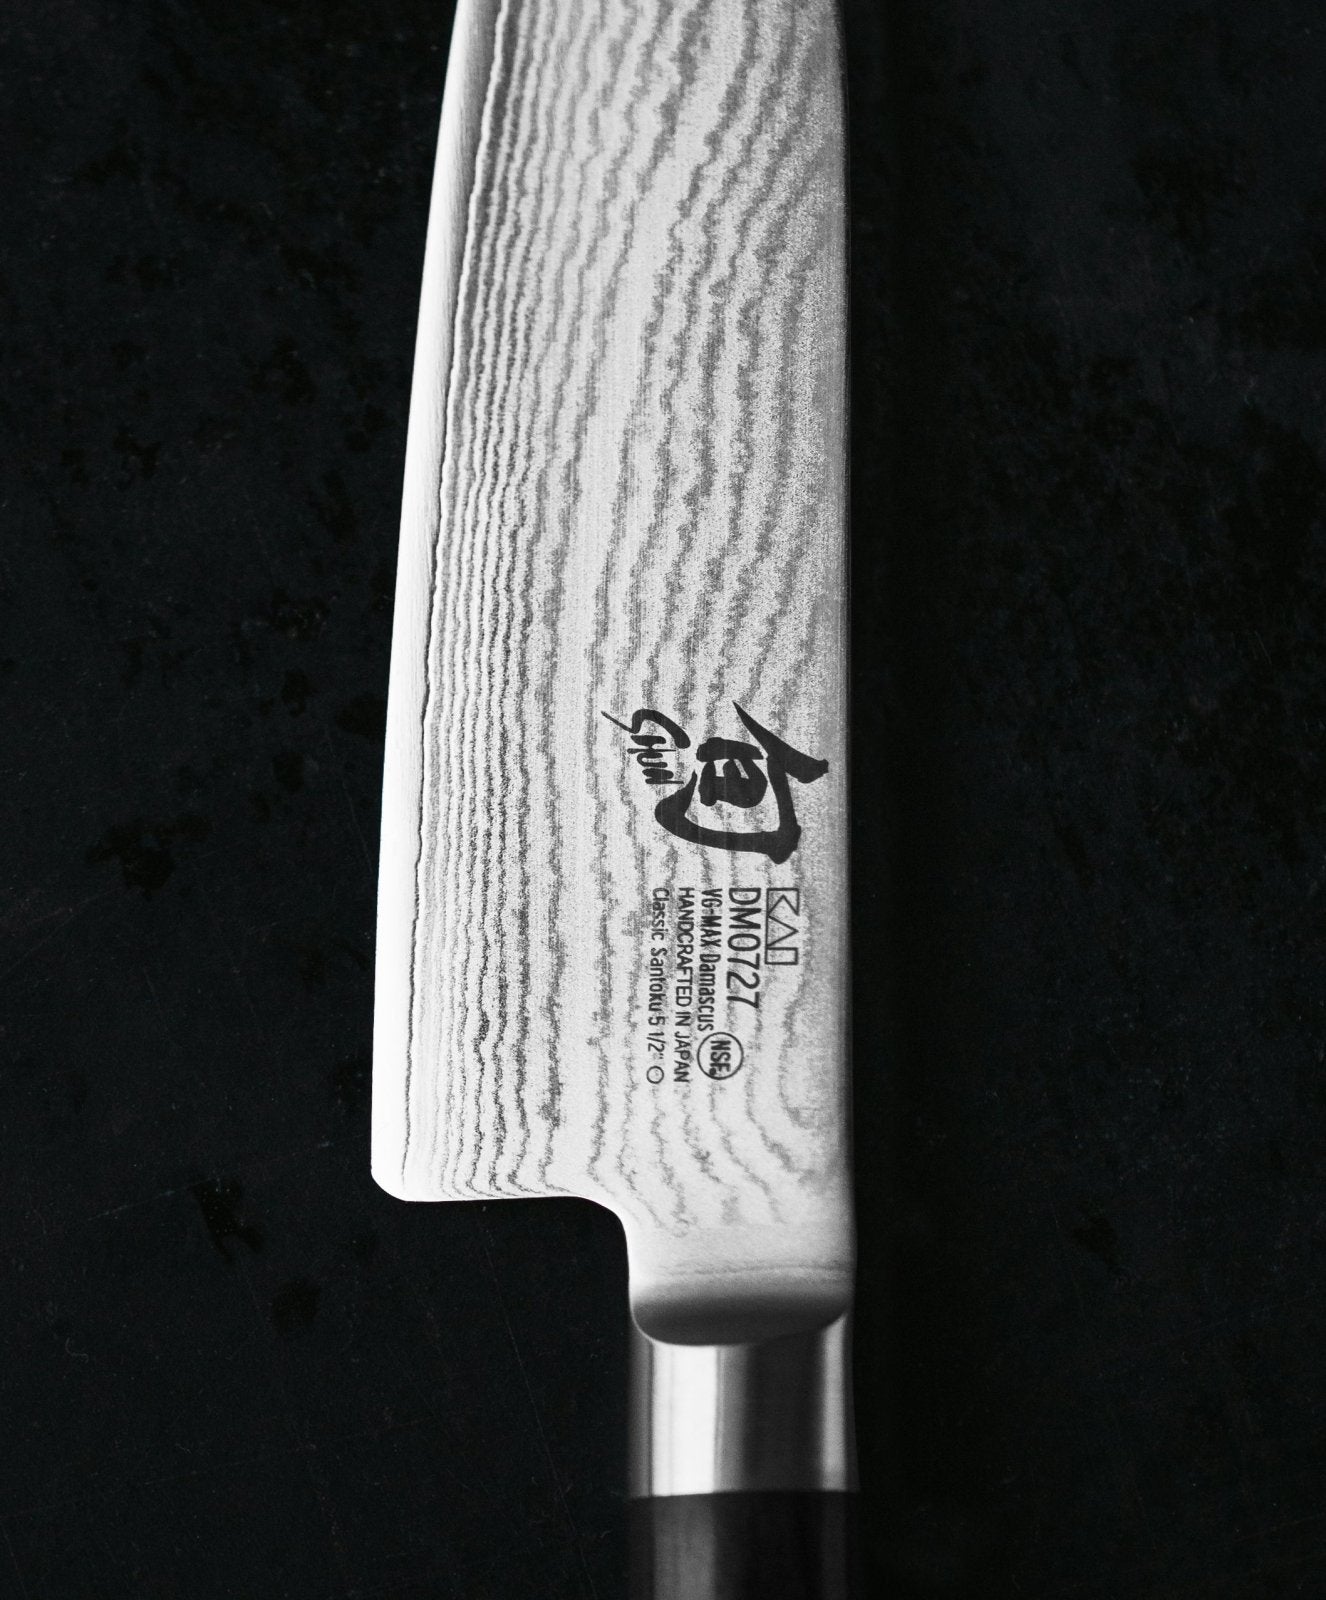 KAI Shun 16.5cm Nakiri Knife - KAI-DM-0728 - The Cotswold Knife Company